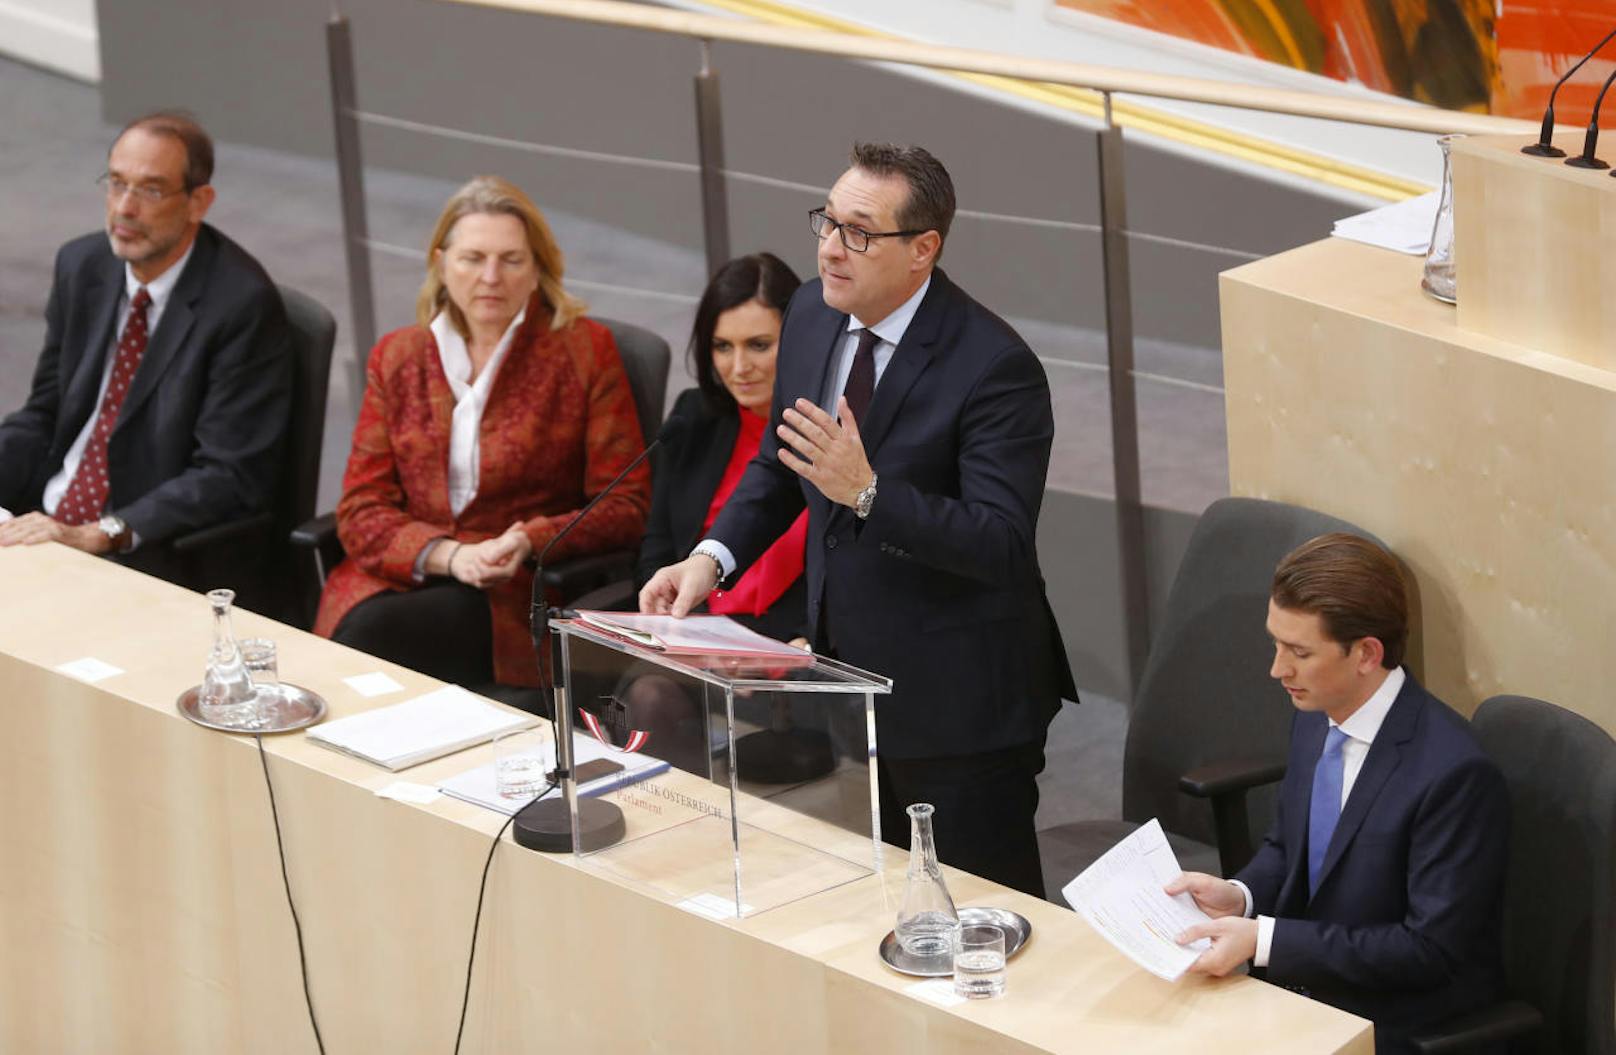 Strache begann seine Ansprache mit einer kleinen Panne: Er begrüßt Ex-Nationalratspräsident Andreas Khol als "Helmut Khol".